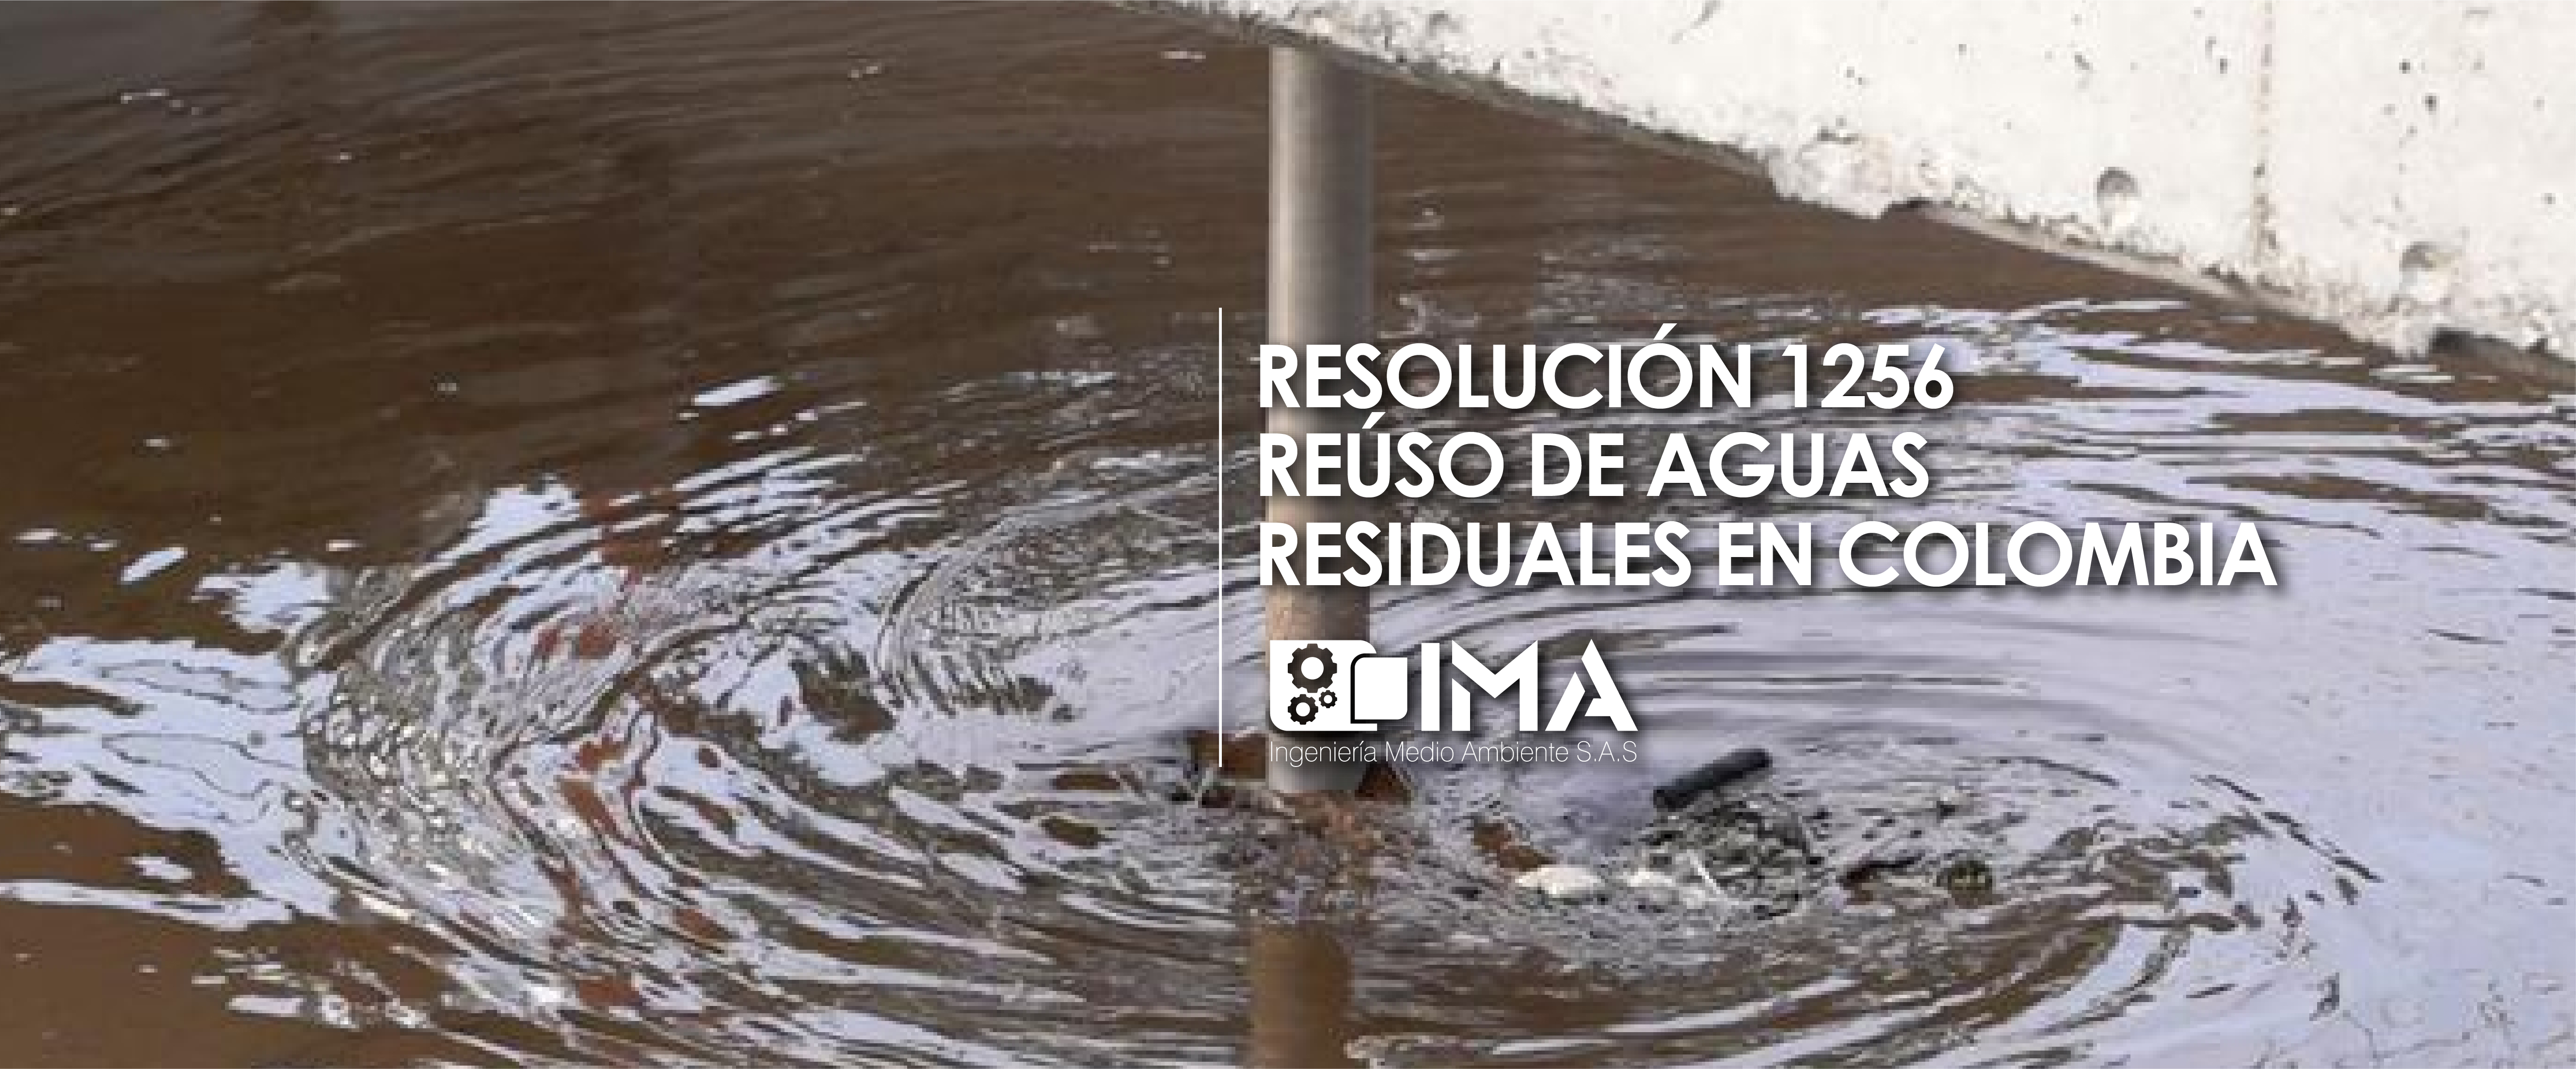 Reuso de aguas residuales en colombia